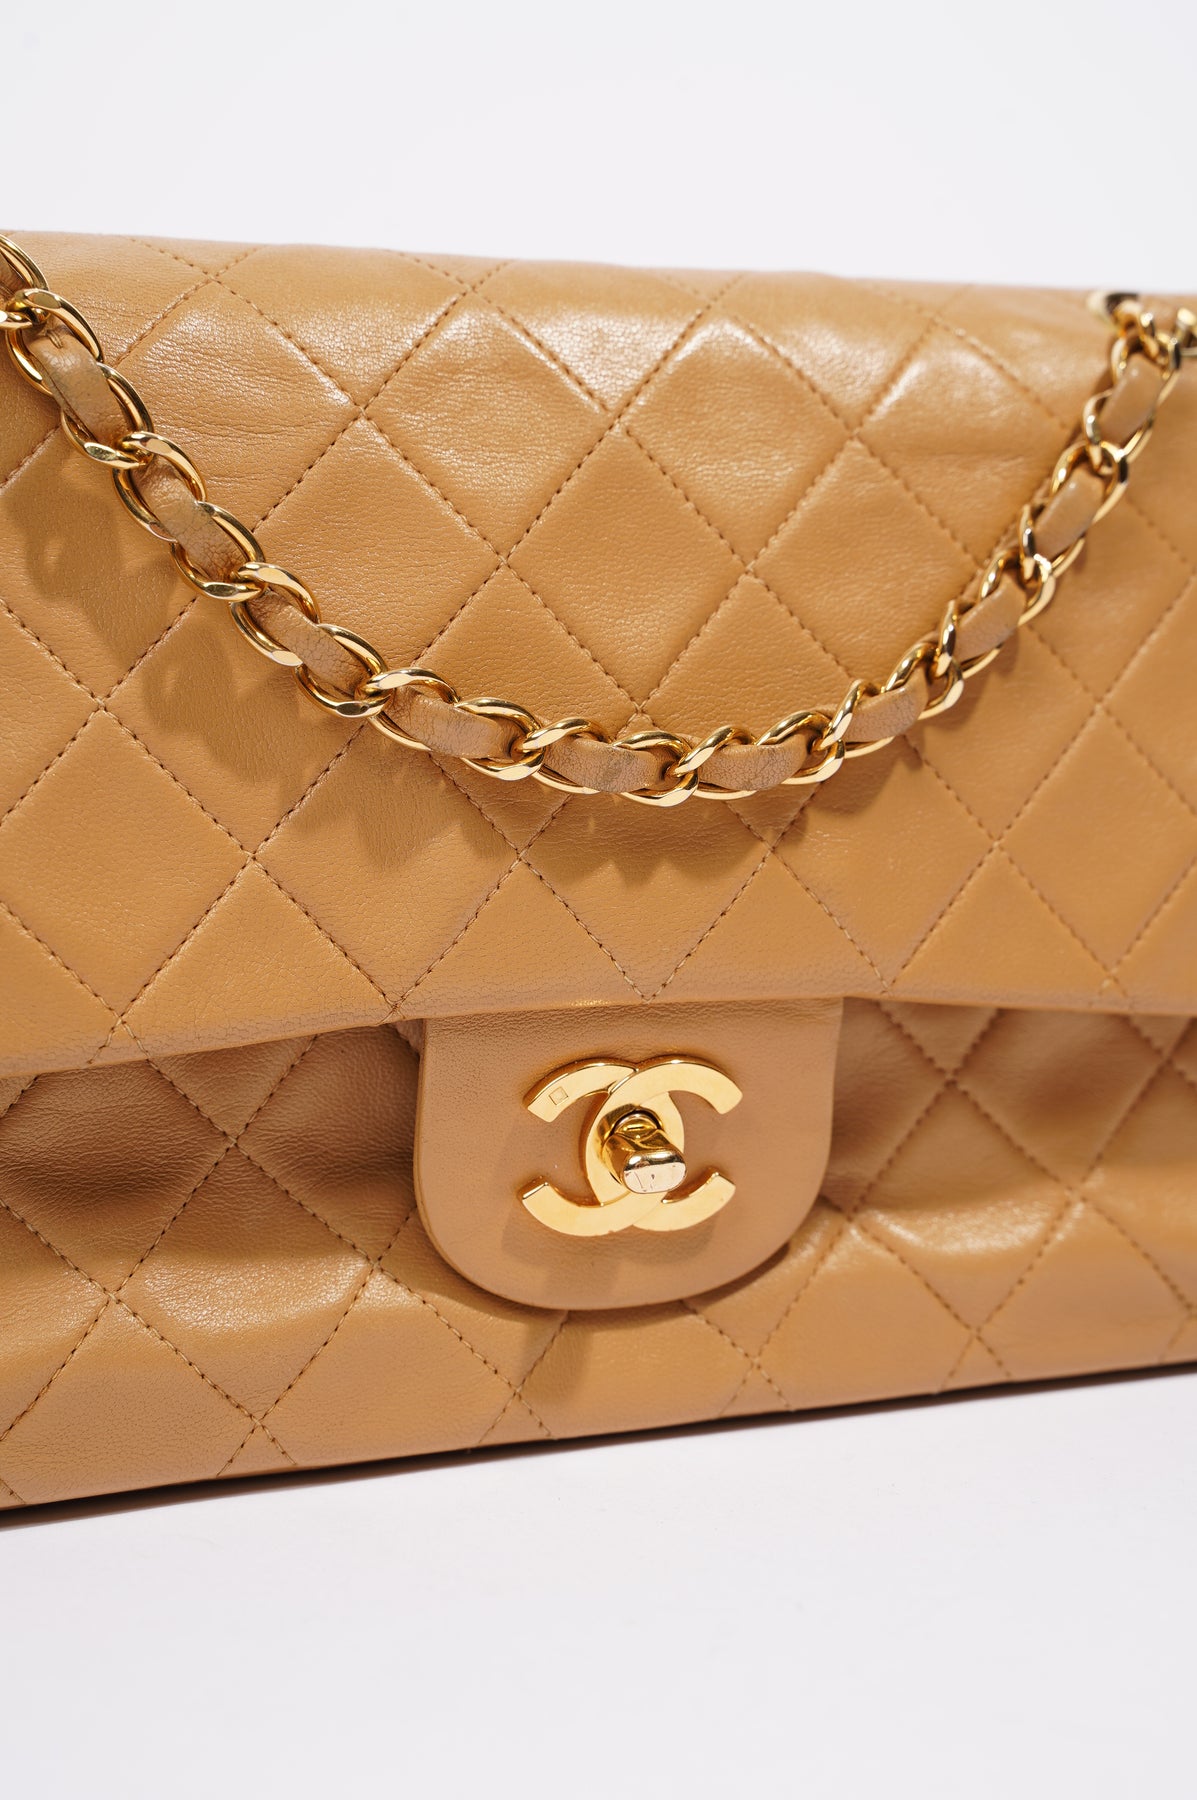 Chanel beige lambskin classic - Gem